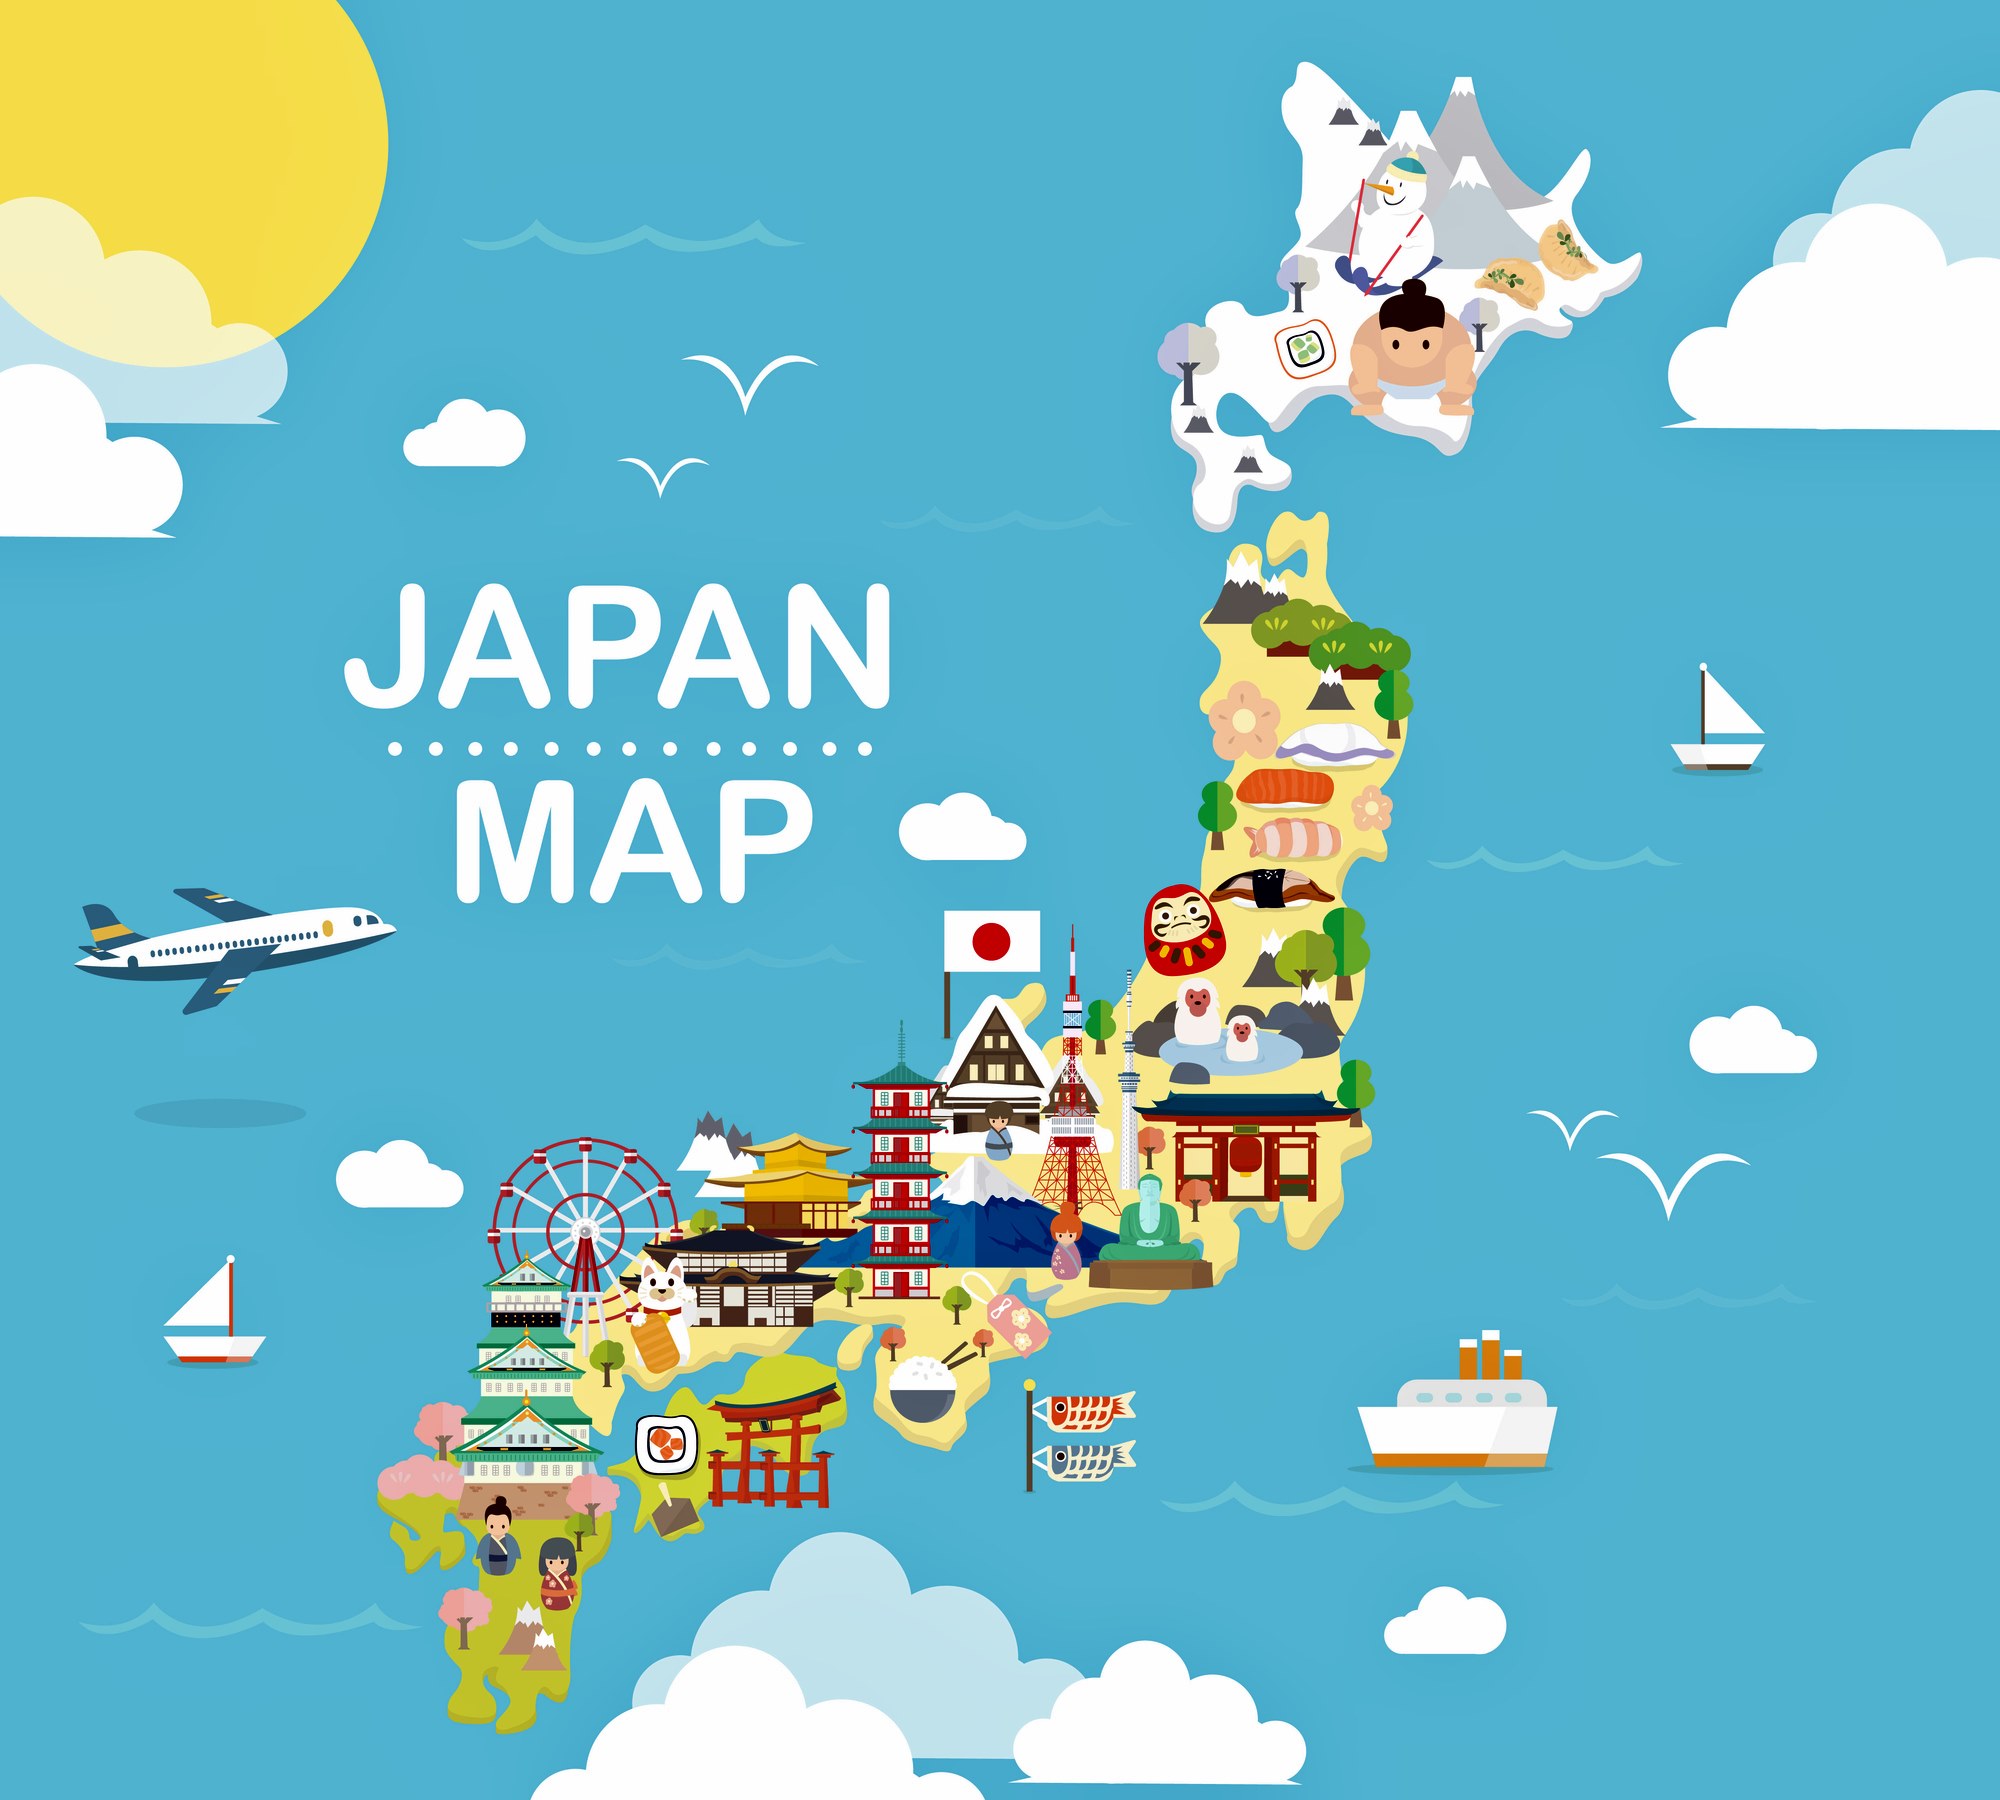 Japan Map Sights 1 